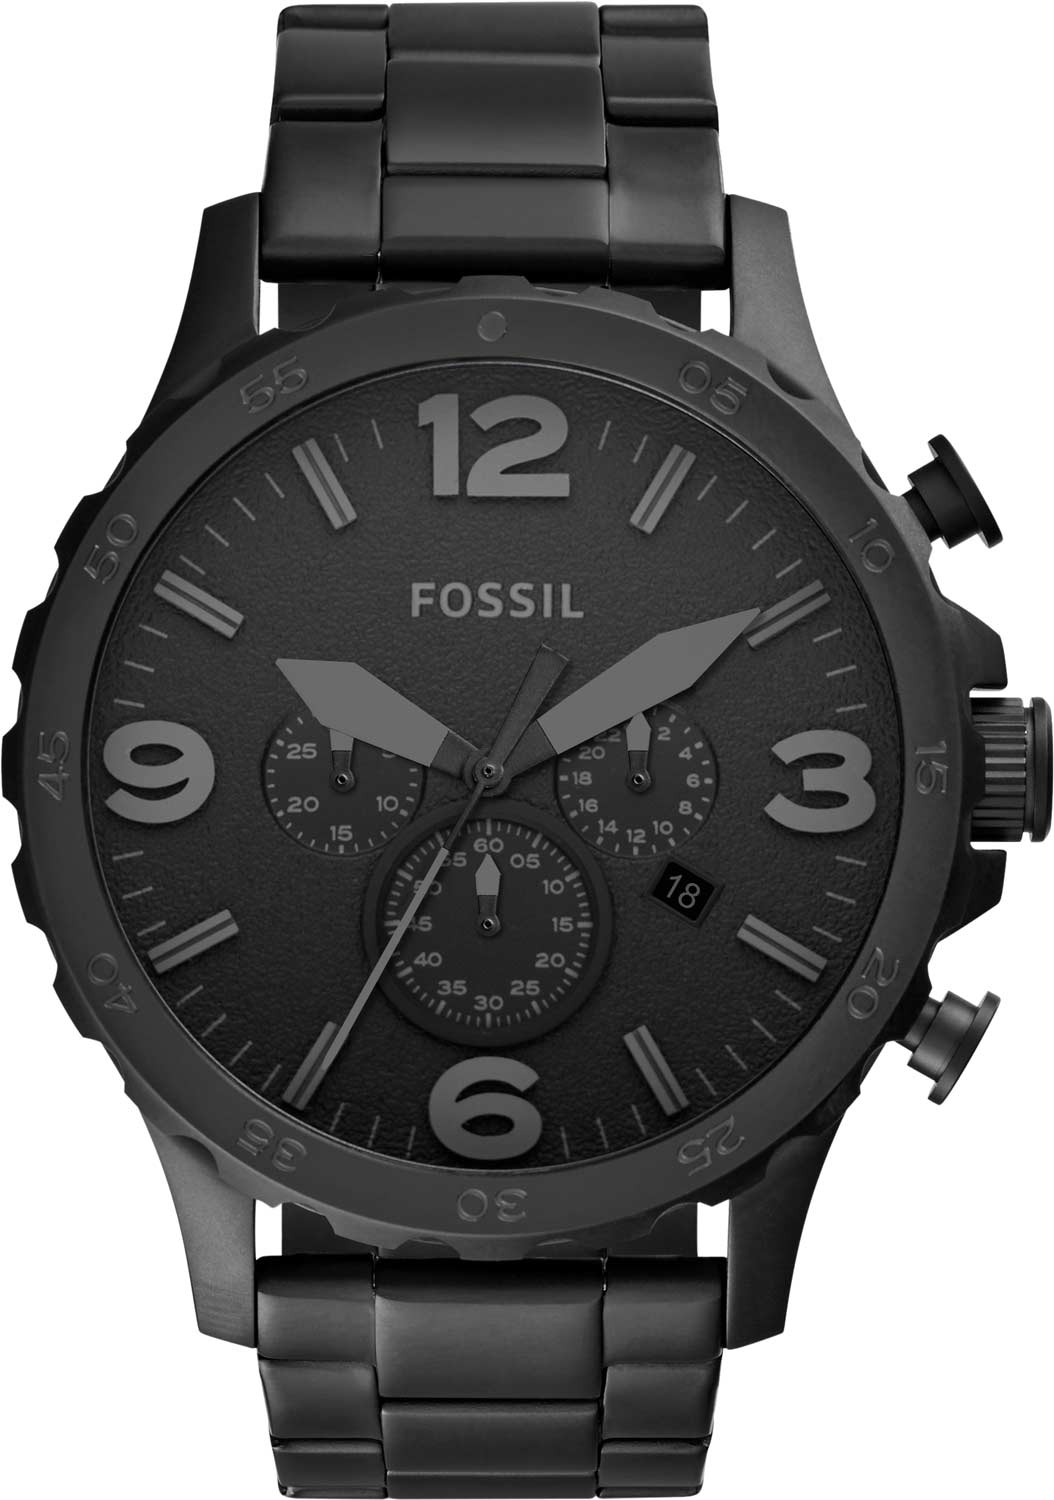   Fossil JR1401  